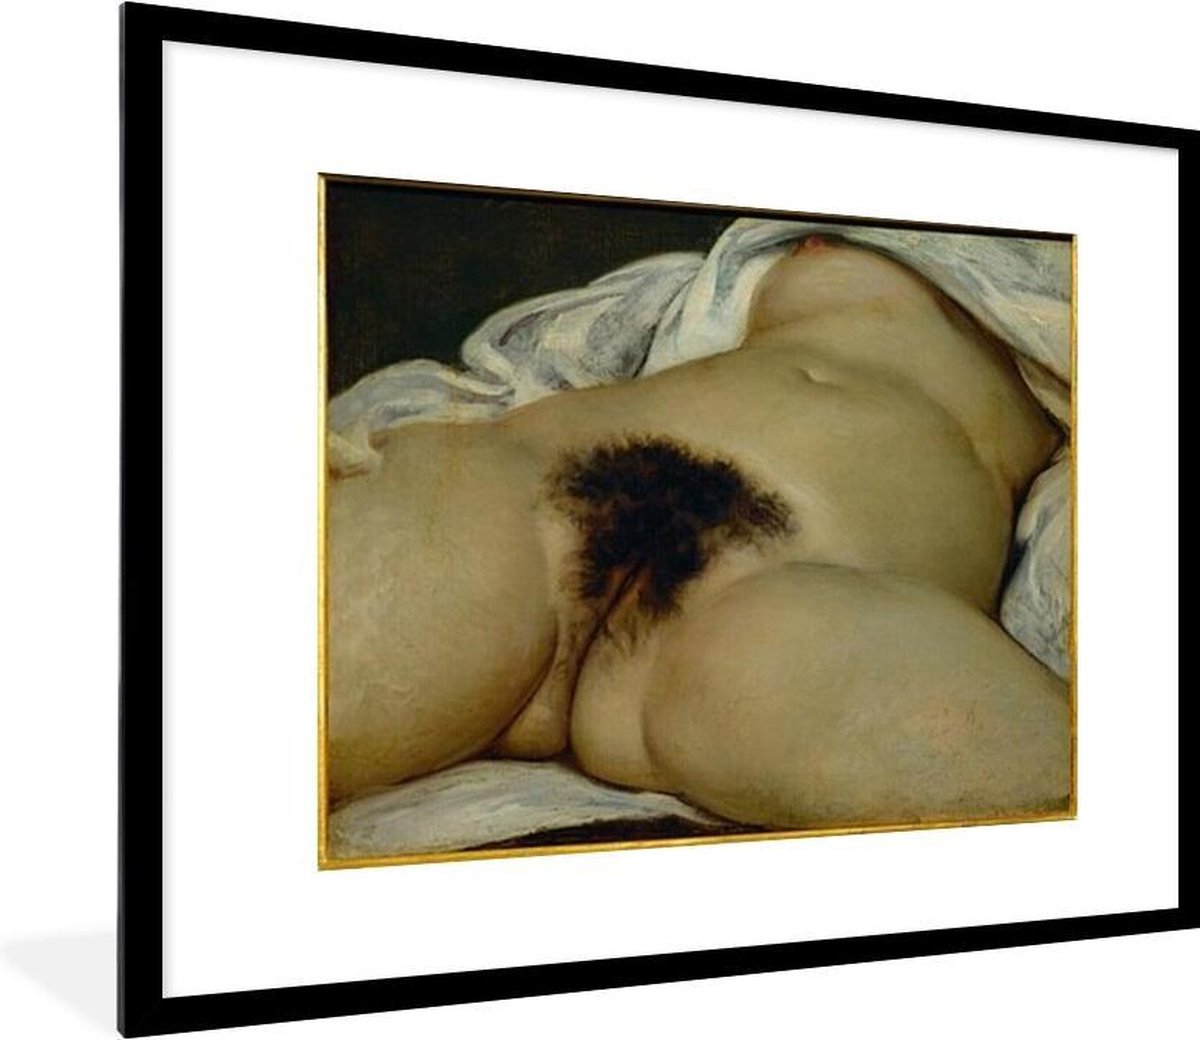 PosterMonkey - Fotolijst incl. Poster - De oorsprong van de wereld - schilderij van Gustave Courbet - 80x60 cm - PosterMonkey